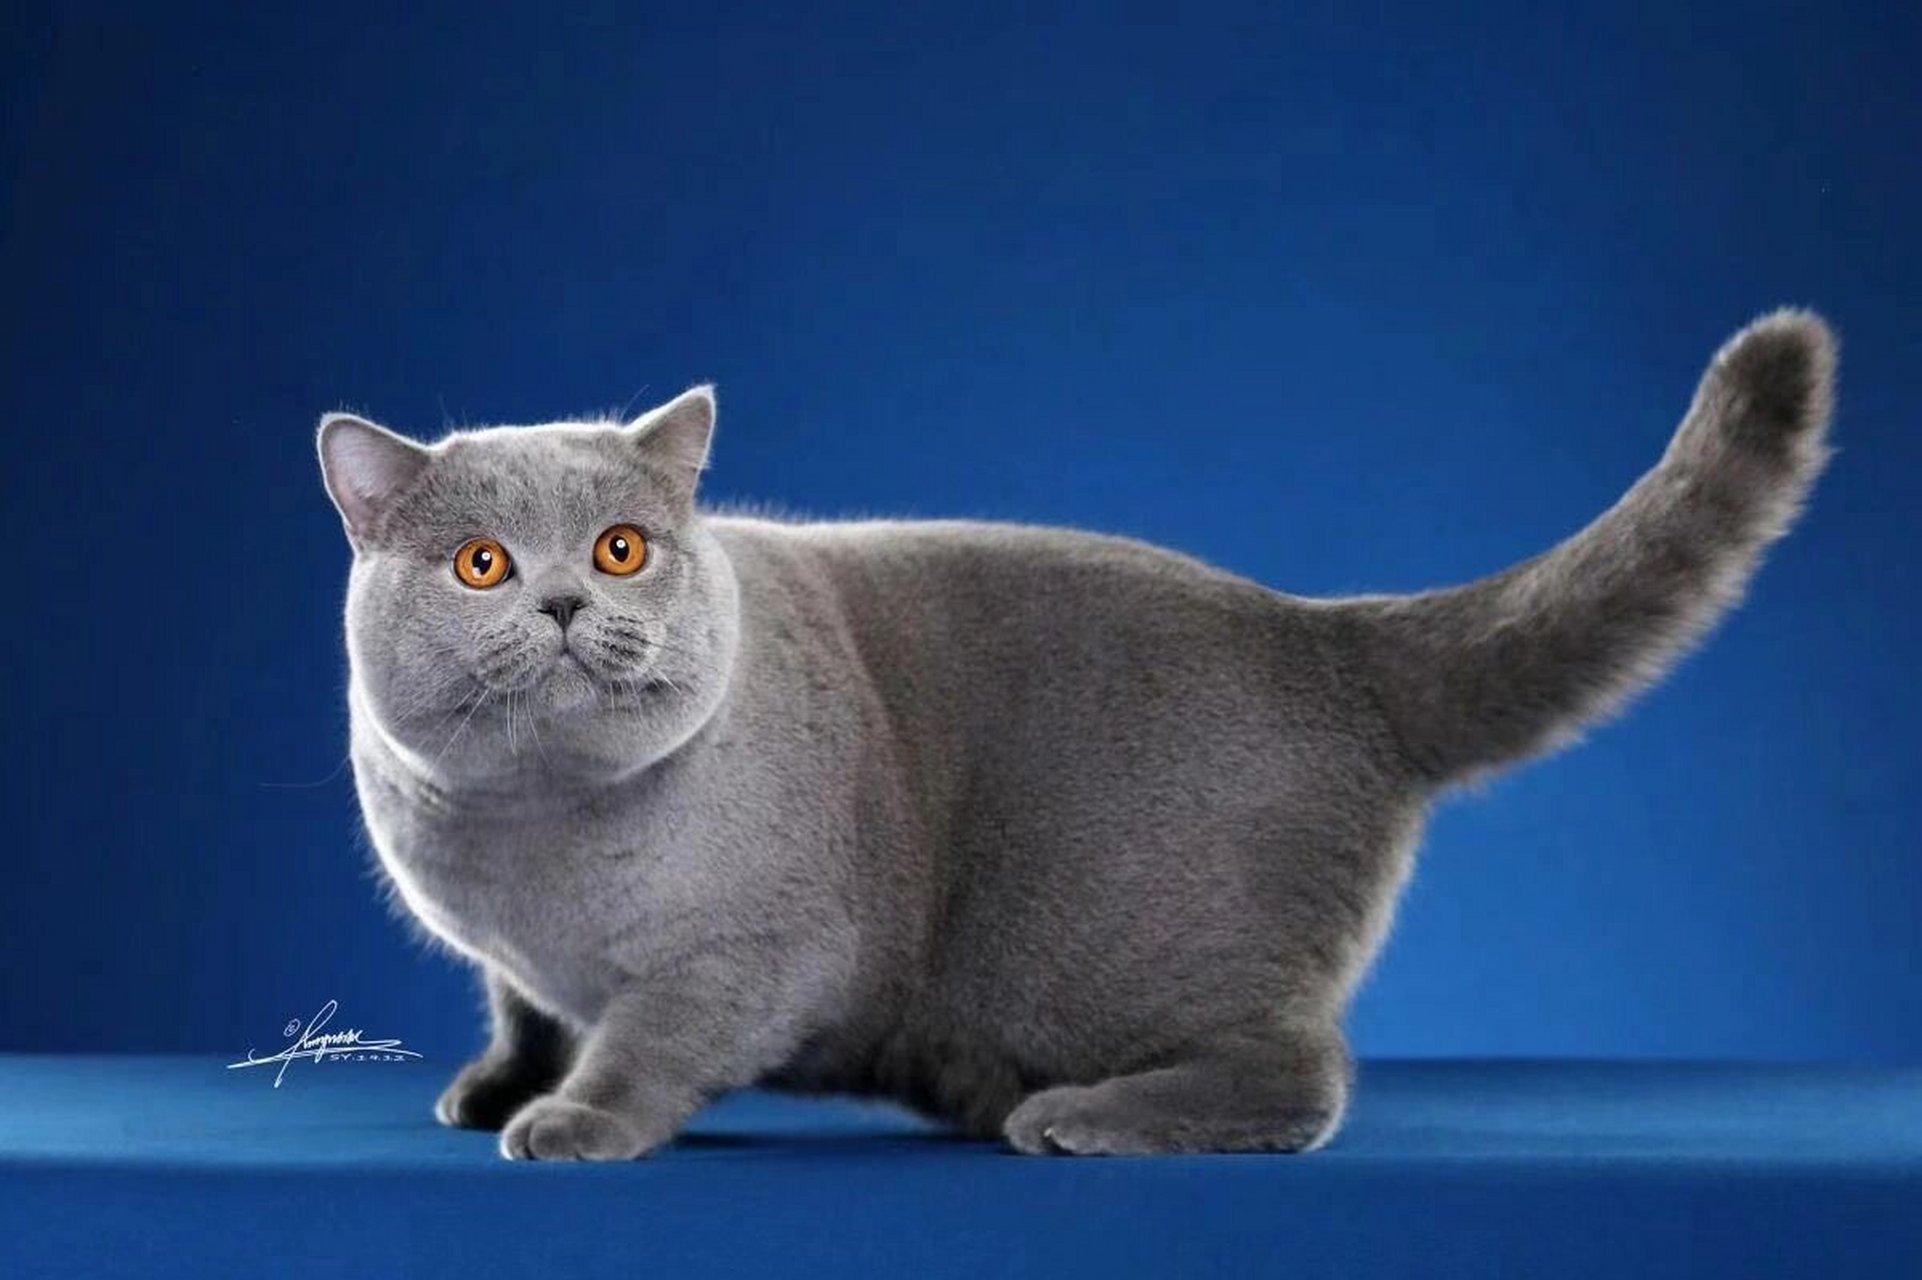 真正的纯血赛级蓝色英短长这样 不是所有的蓝猫,都能称之为英短蓝猫!